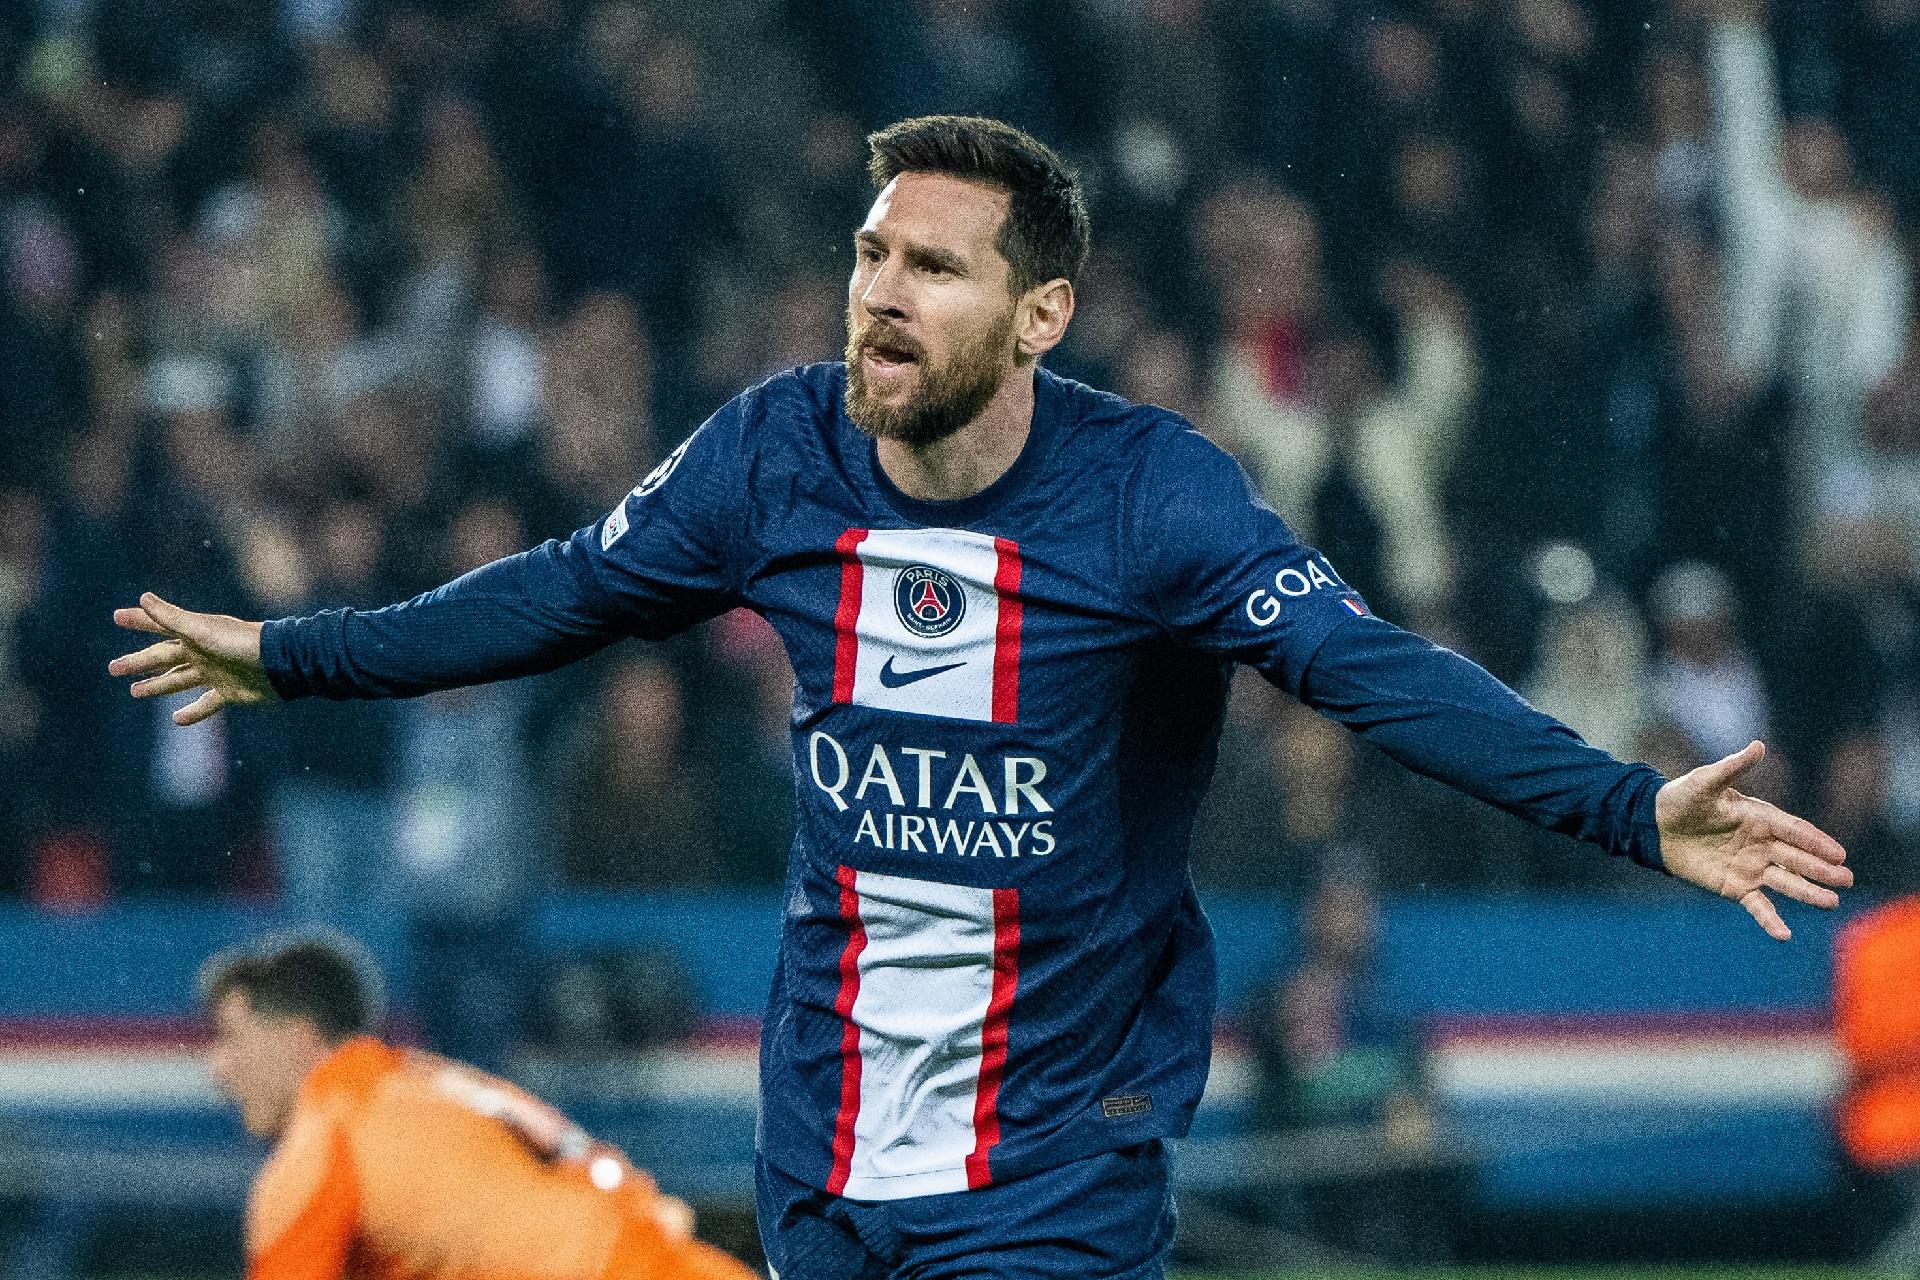 A chegada de Messi ao PSG também tem um impacto significativo fora de campo